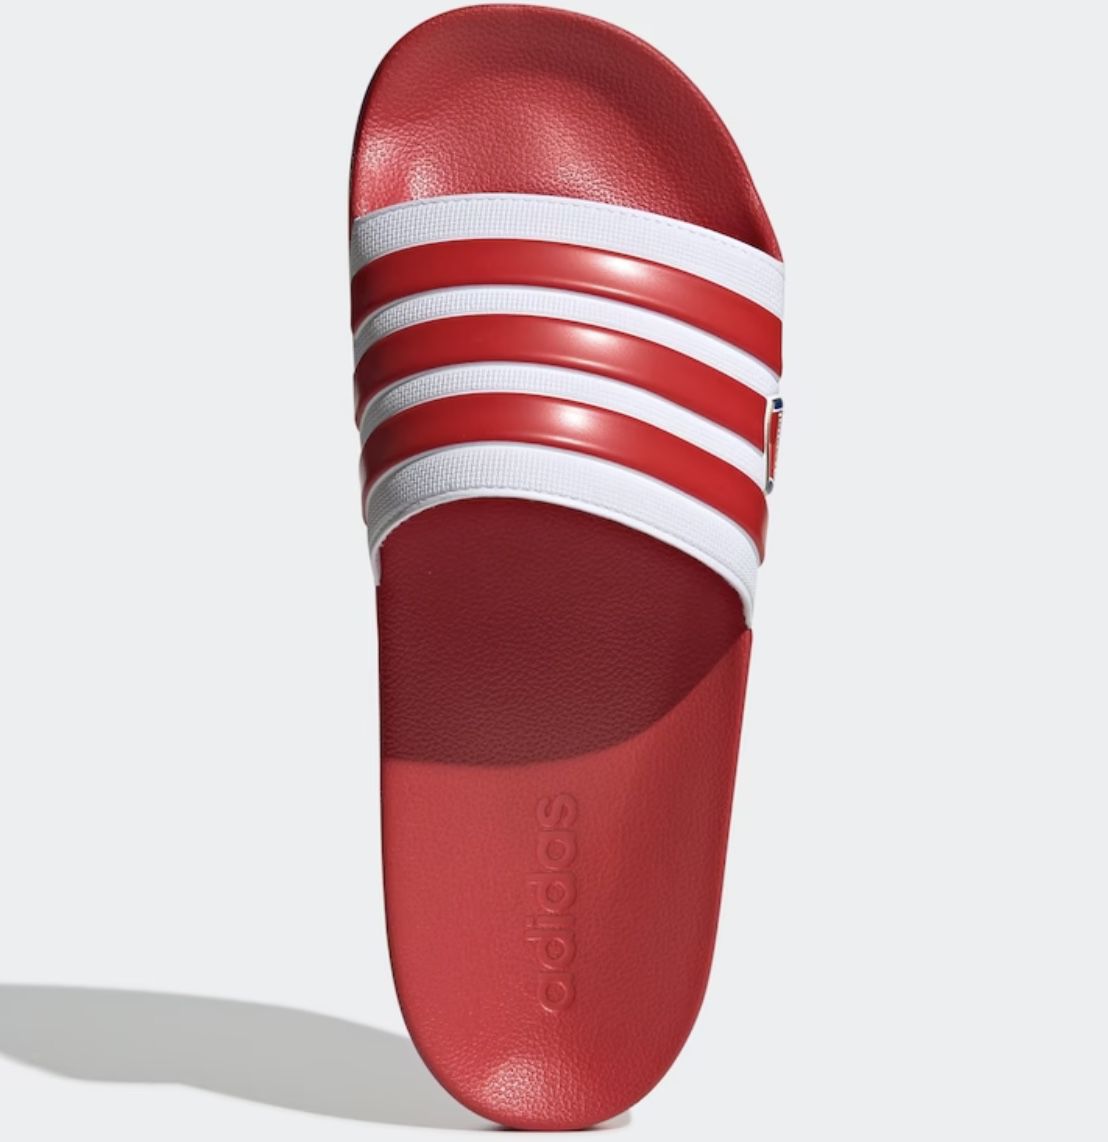 adidas adilette Shower Arsenal-Pantoletten in Rot-Weiß für 9,99€ (statt 22€)